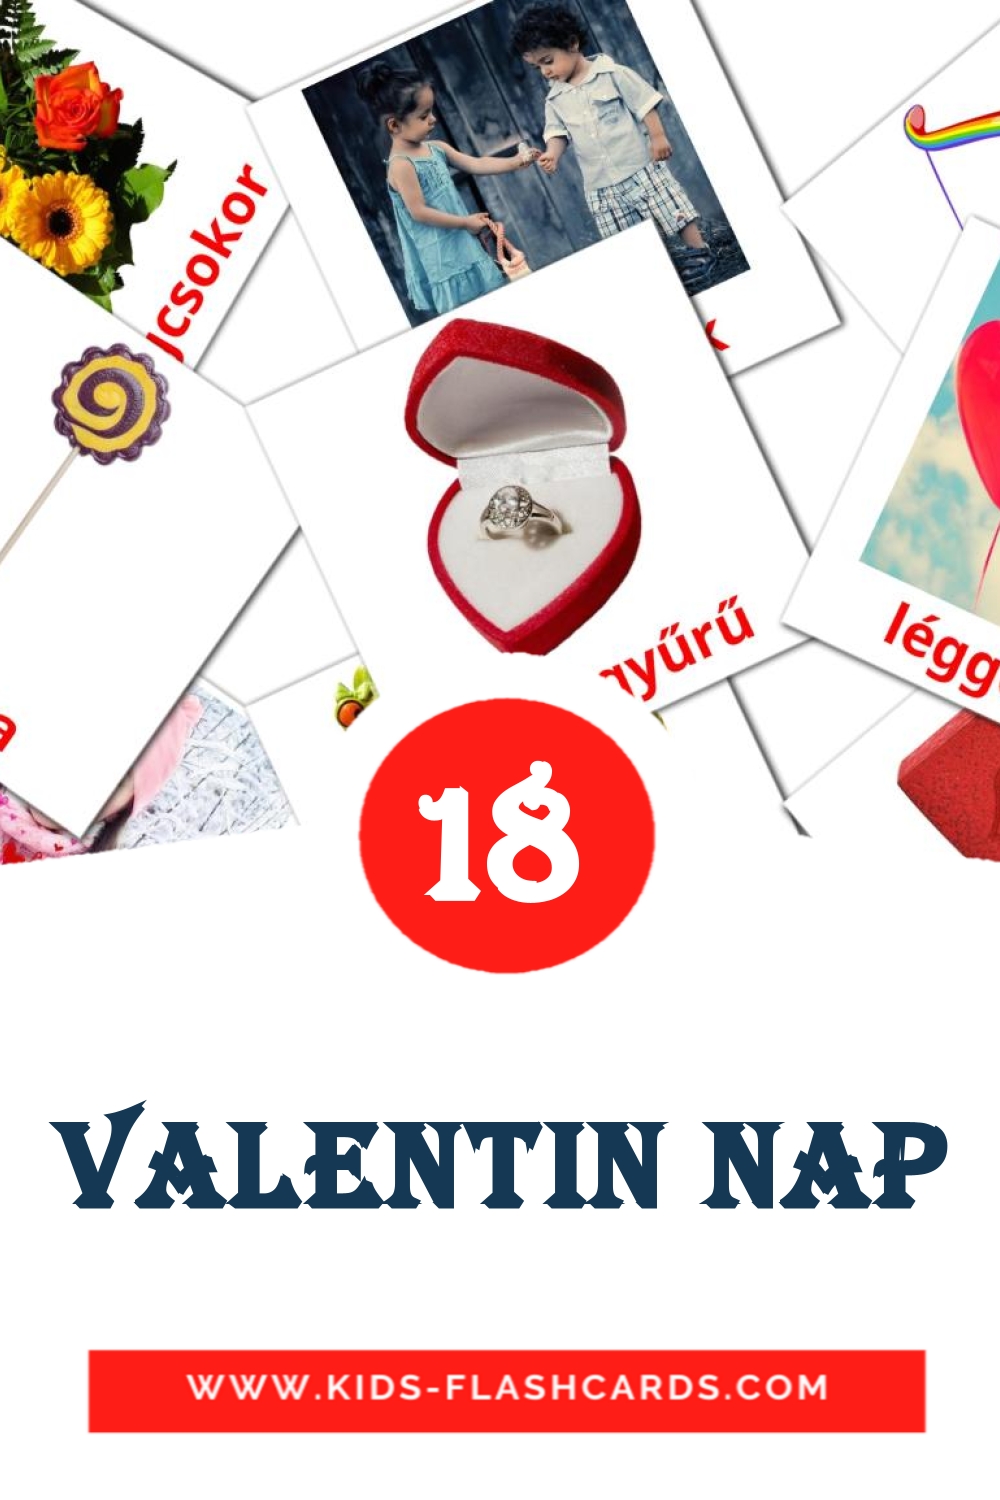 18 Valentin nap fotokaarten voor kleuters in het hongaars